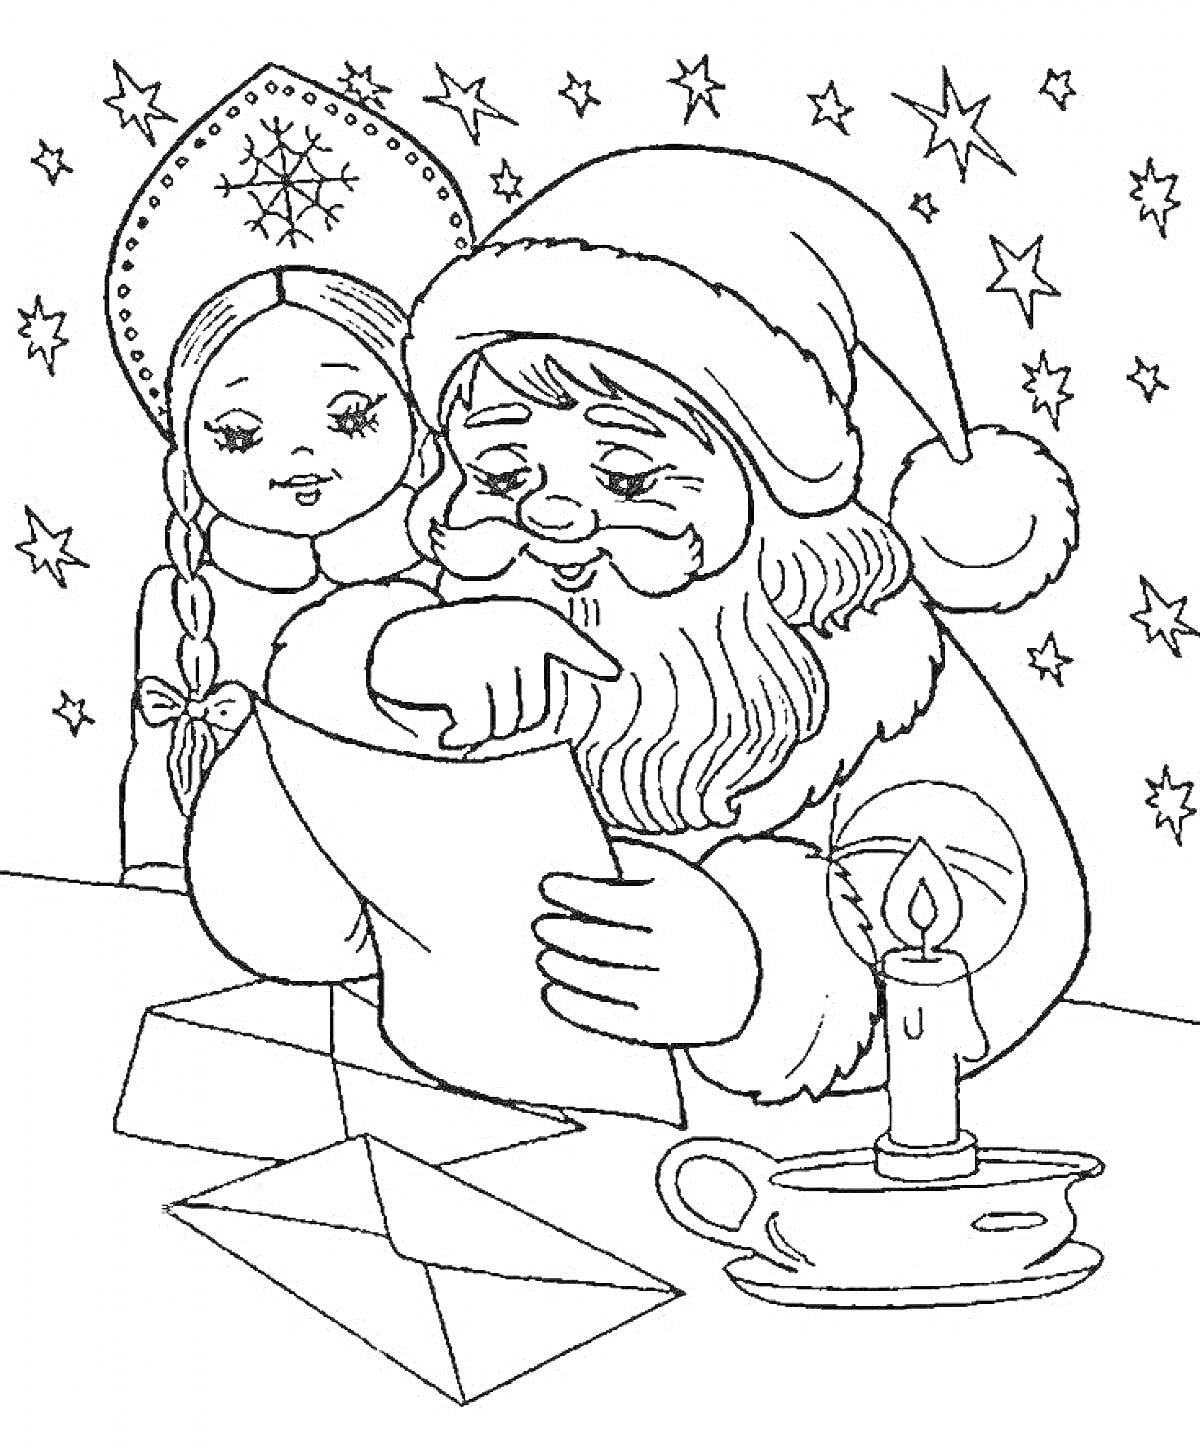 Раскраска Дед Мороз читает письмо, а Снегурочка стоит рядом, ночное небо со звездами, конверт на столе, свеча в подсвечнике